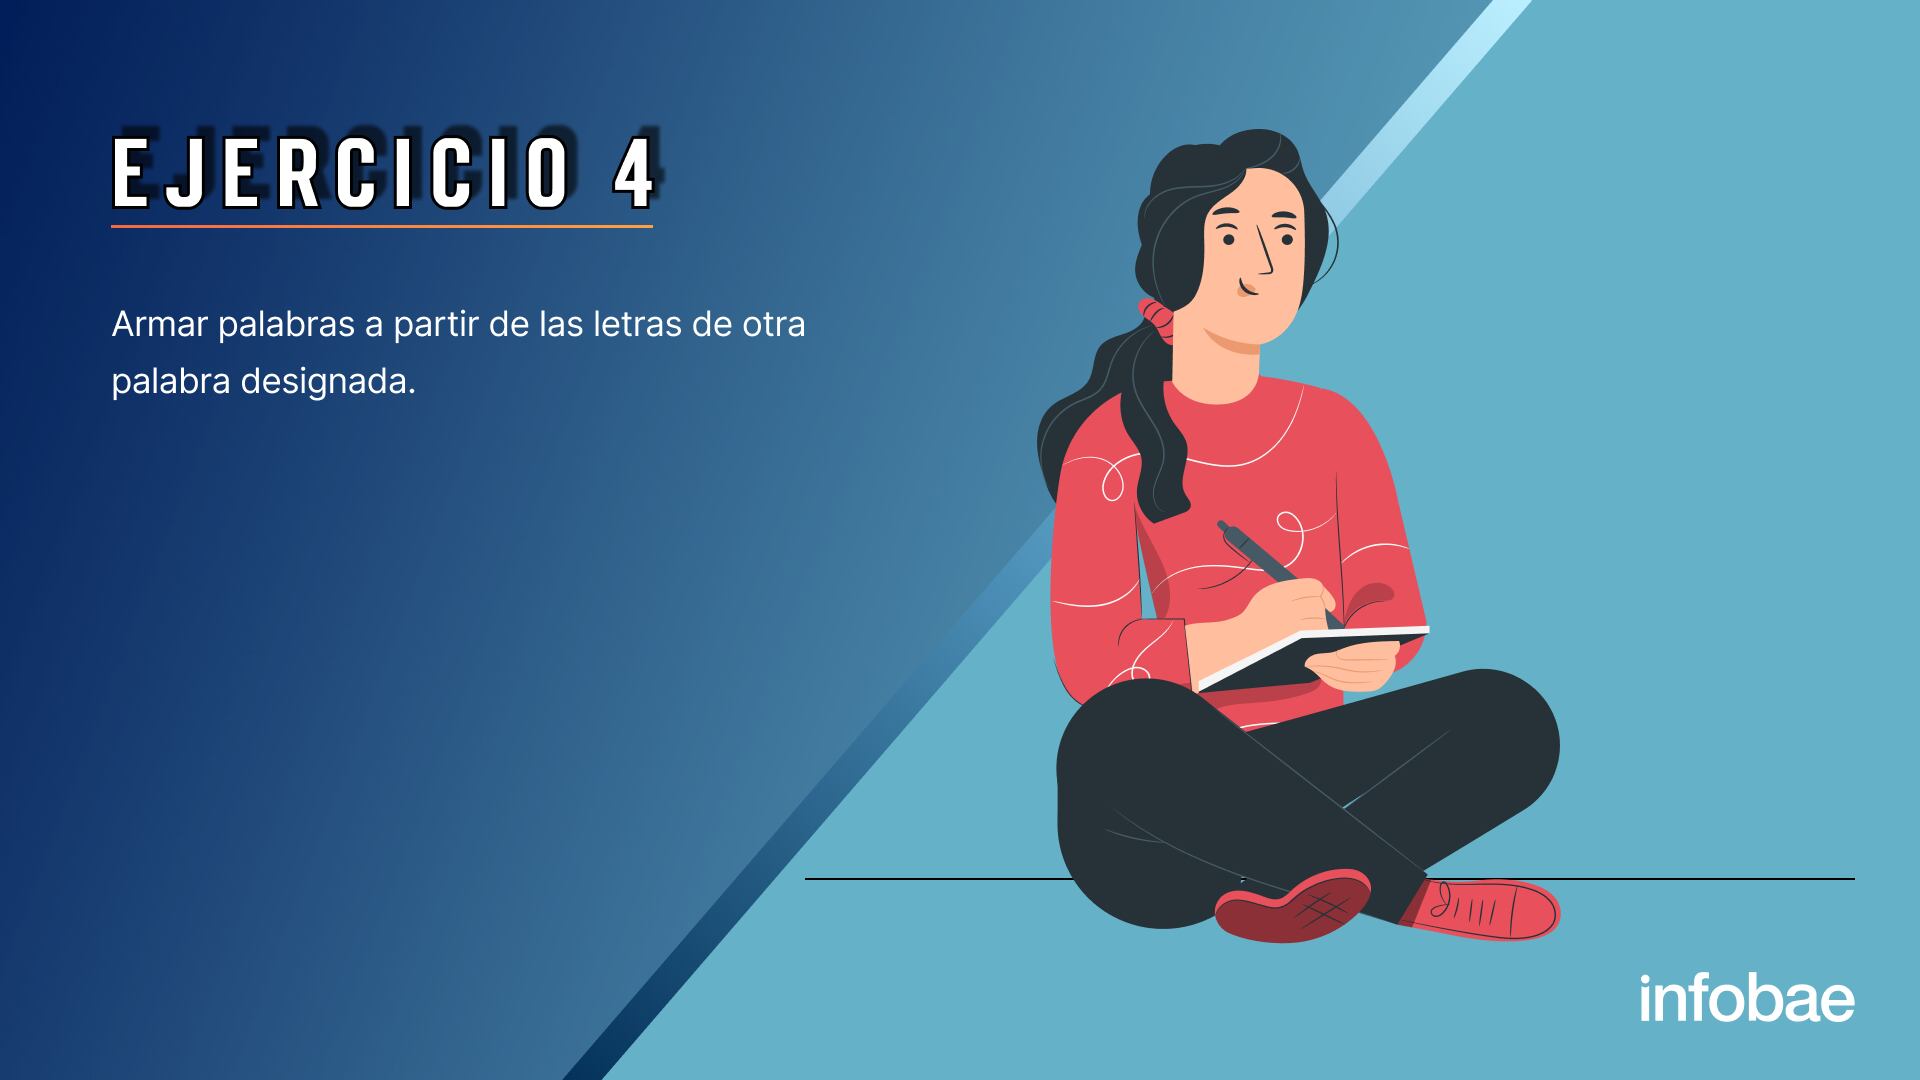 EJERCICIOS INECO 10/5 para la nota: 5 ejercicios útiles para estimular el lenguaje